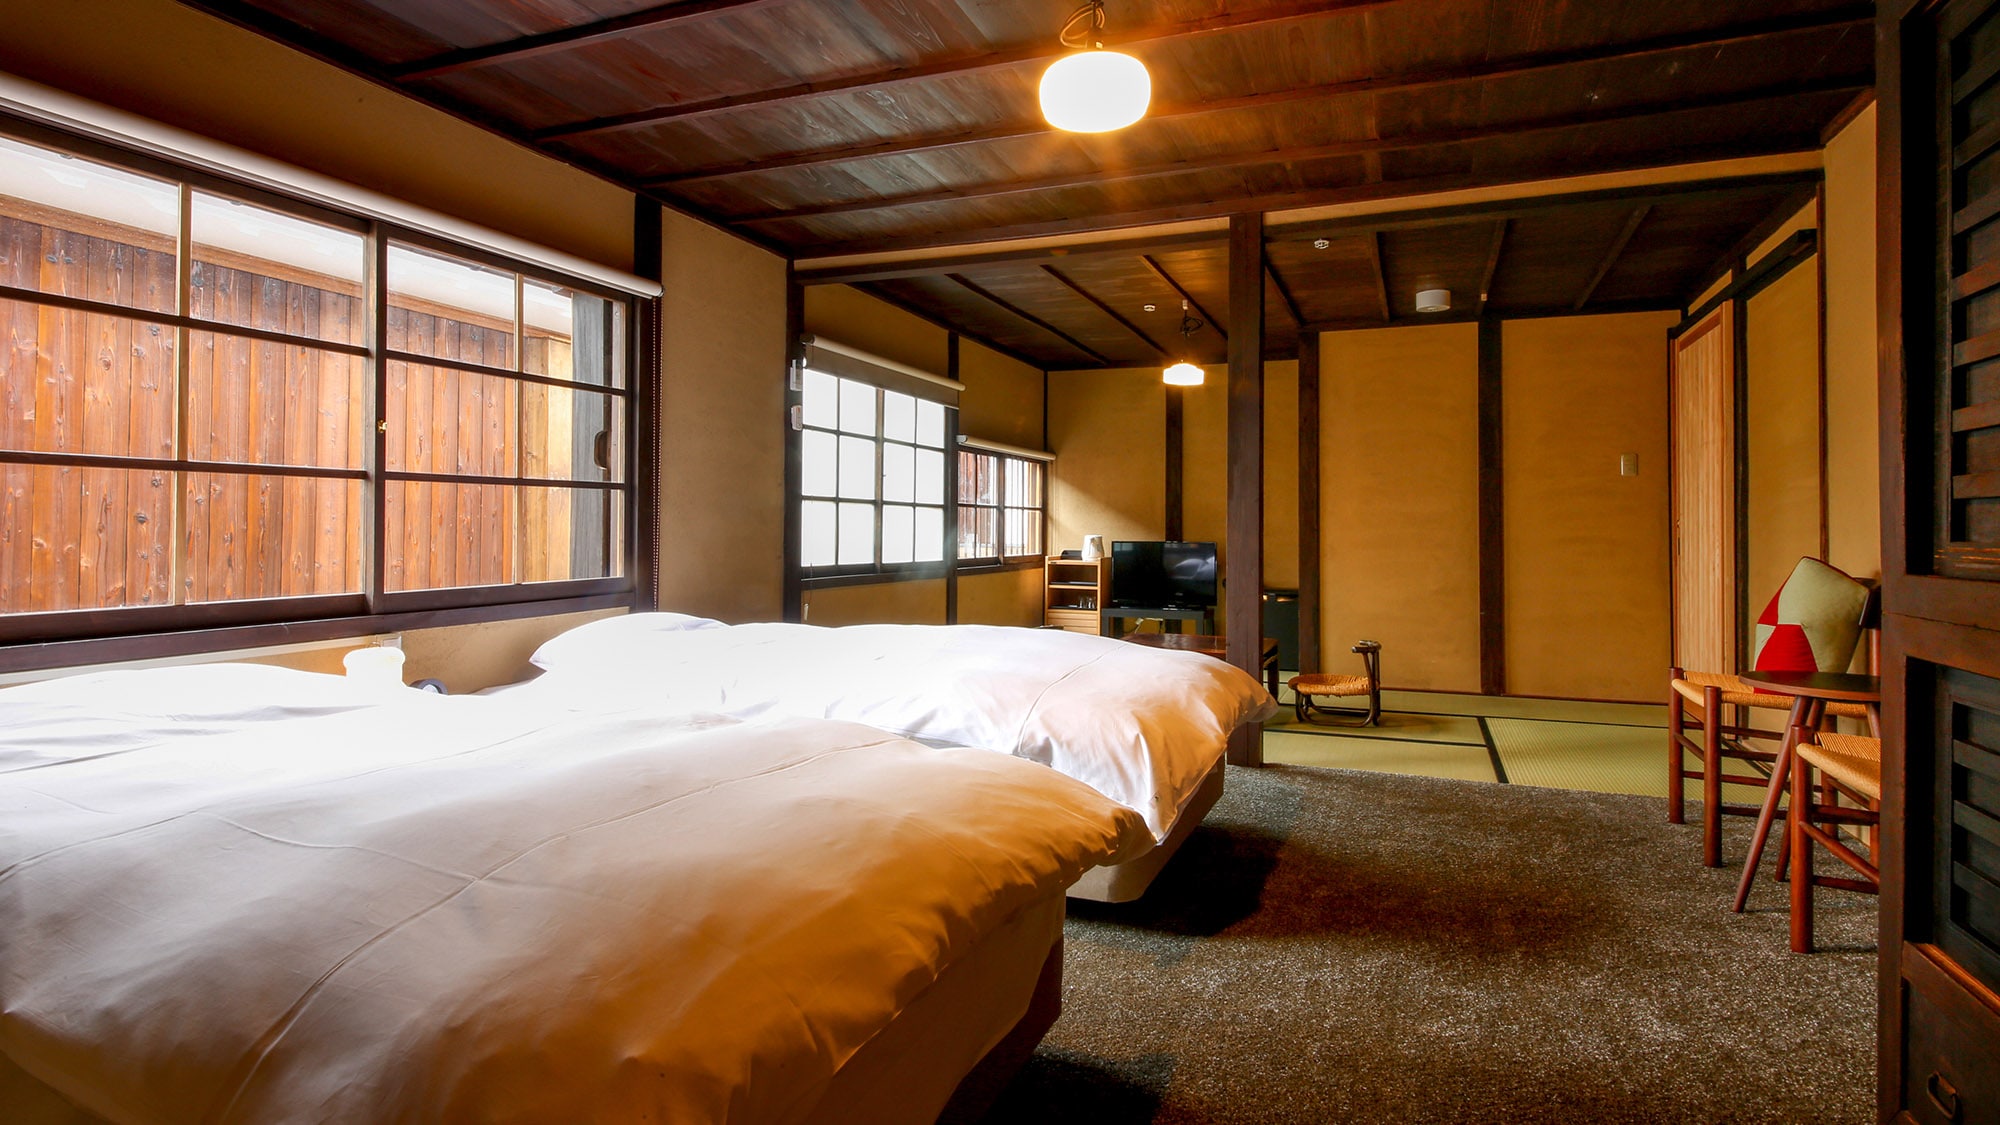 【무코(나데시코)】 다다미와 서양 공간이 있는 도리에서 개방감이 있는 제일 넓은 방